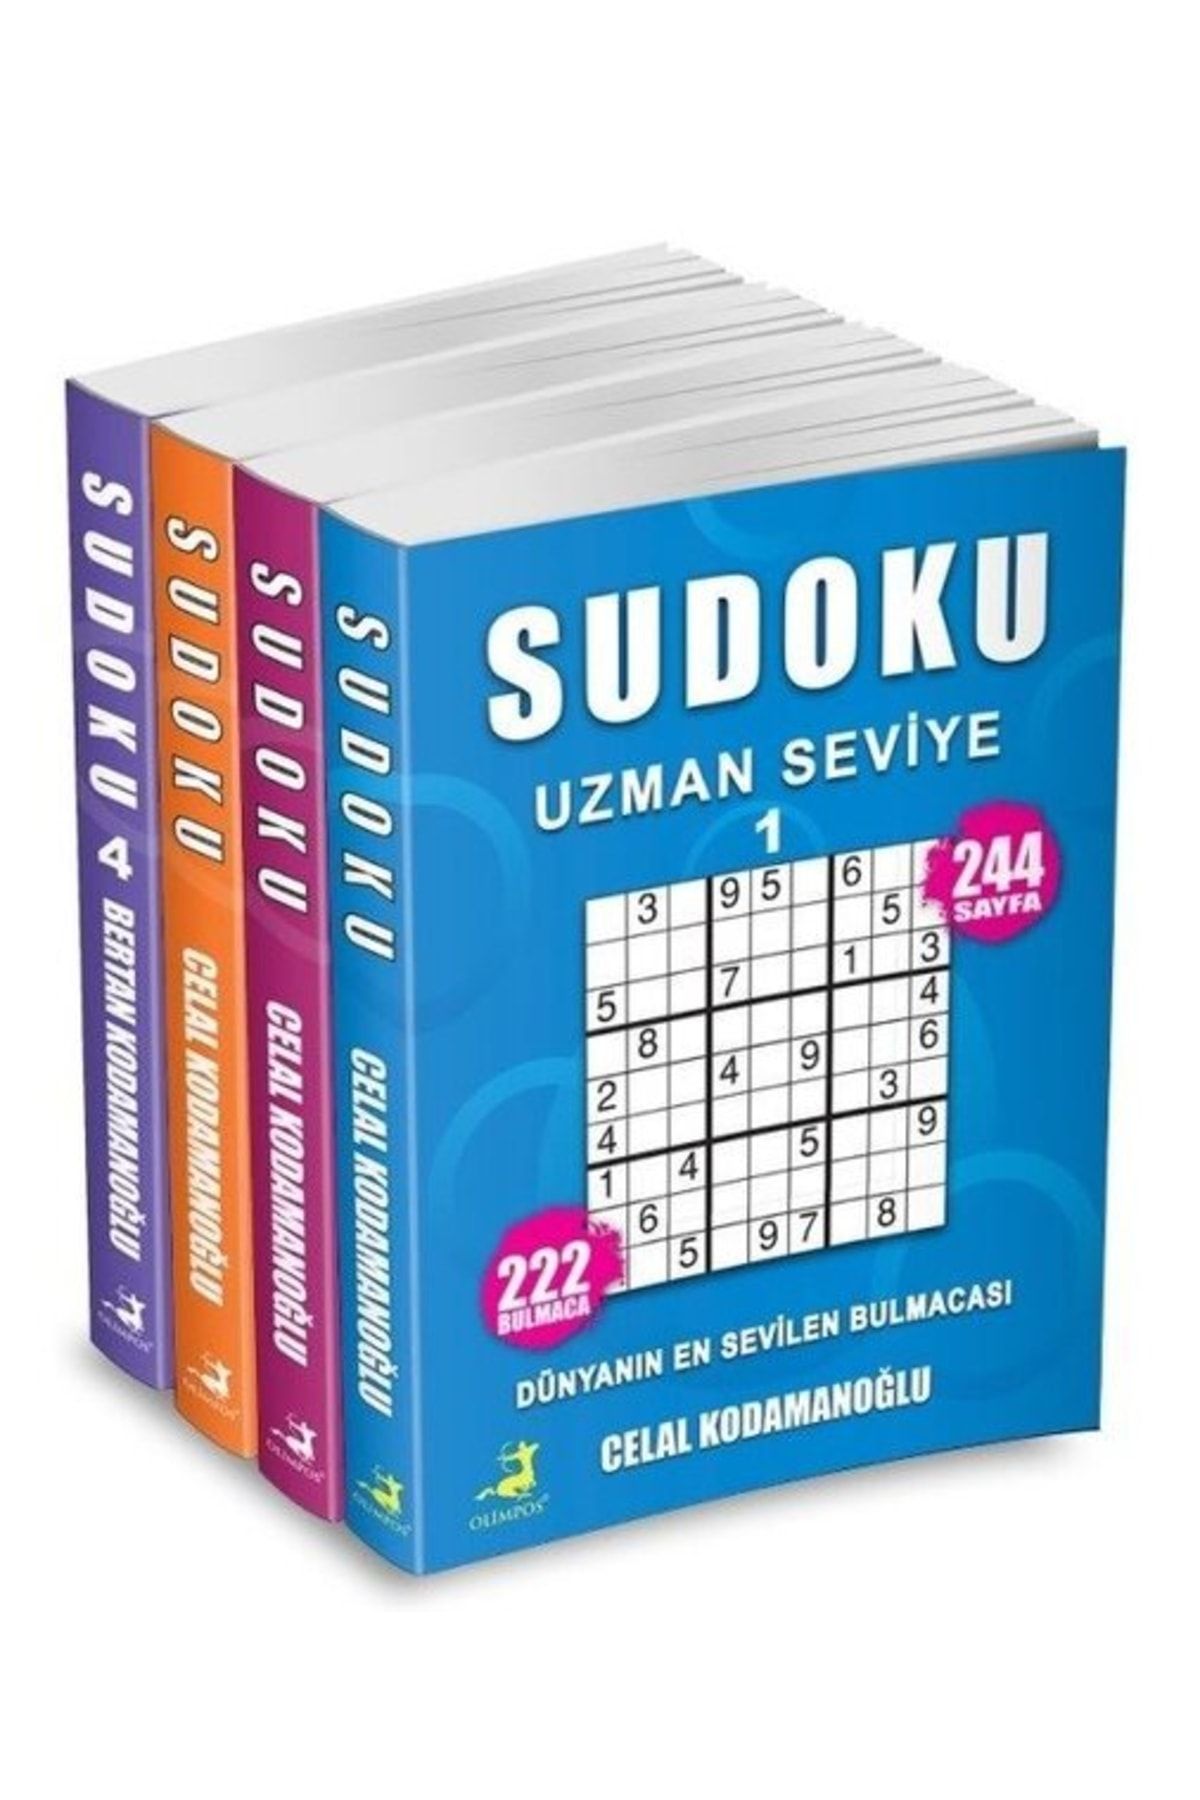 Olimpos Yayınları Sudoku Uzman Seviye Seti - 4 Kitap Takım